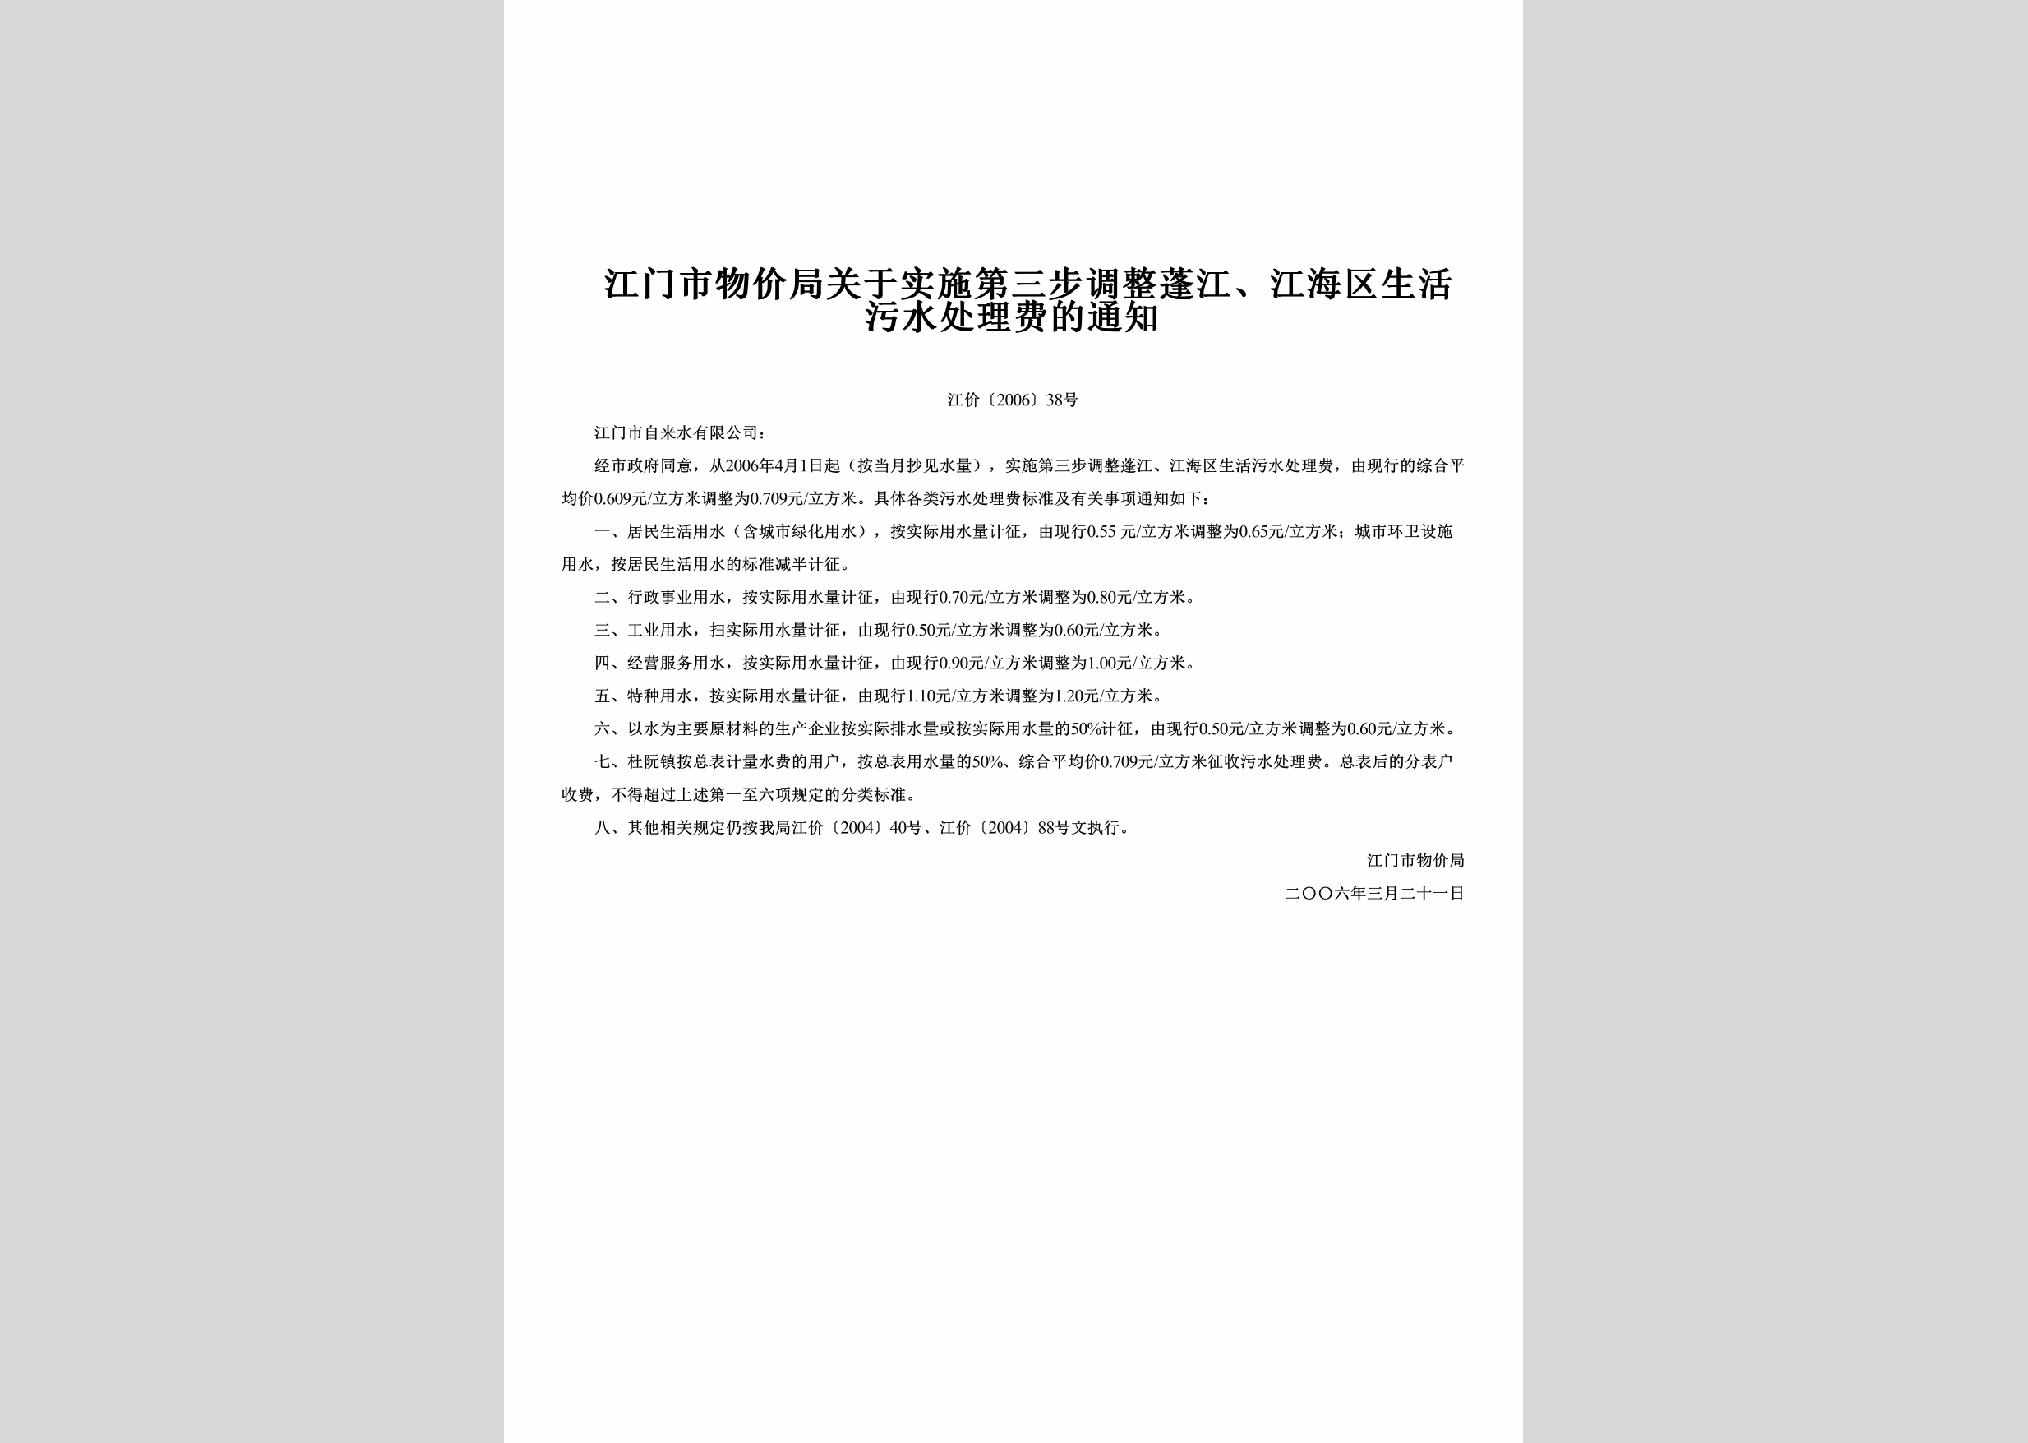 江价[2006]38号：关于实施第三步调整蓬江、江海区生活污水处理费的通知